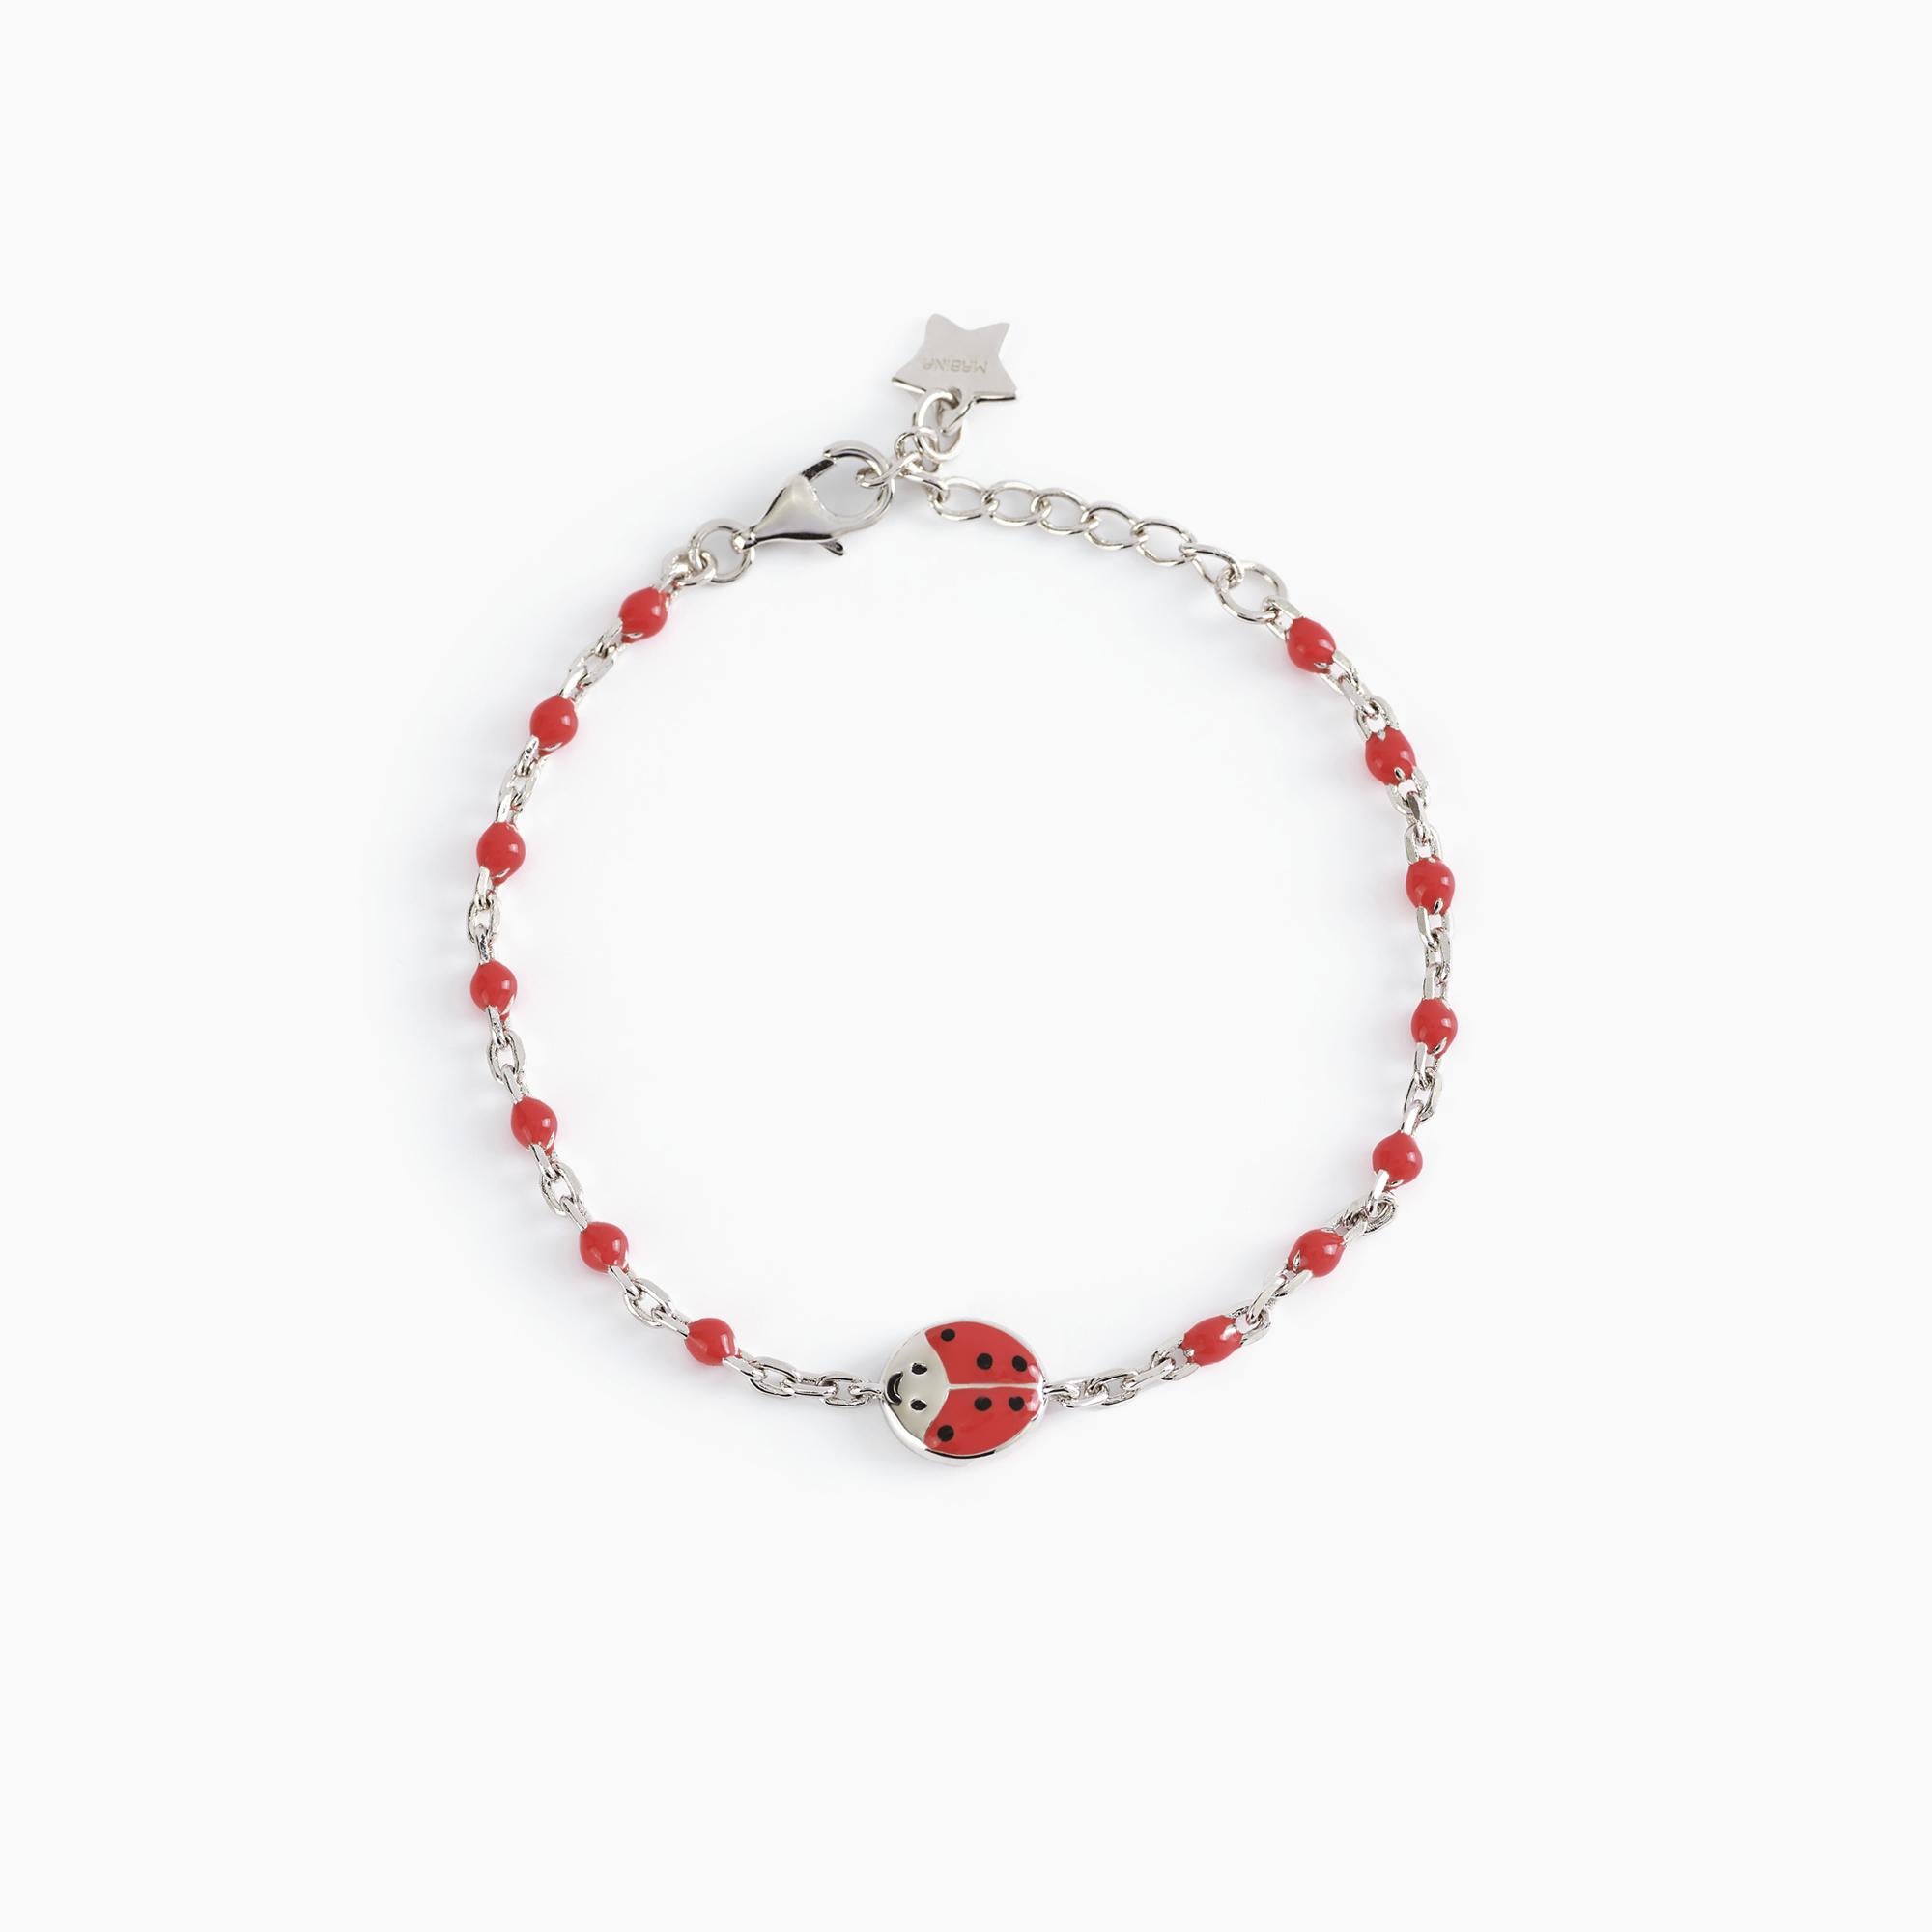 Mabina Junior - Bracelet with ladybug FORTUNELLA - 533482